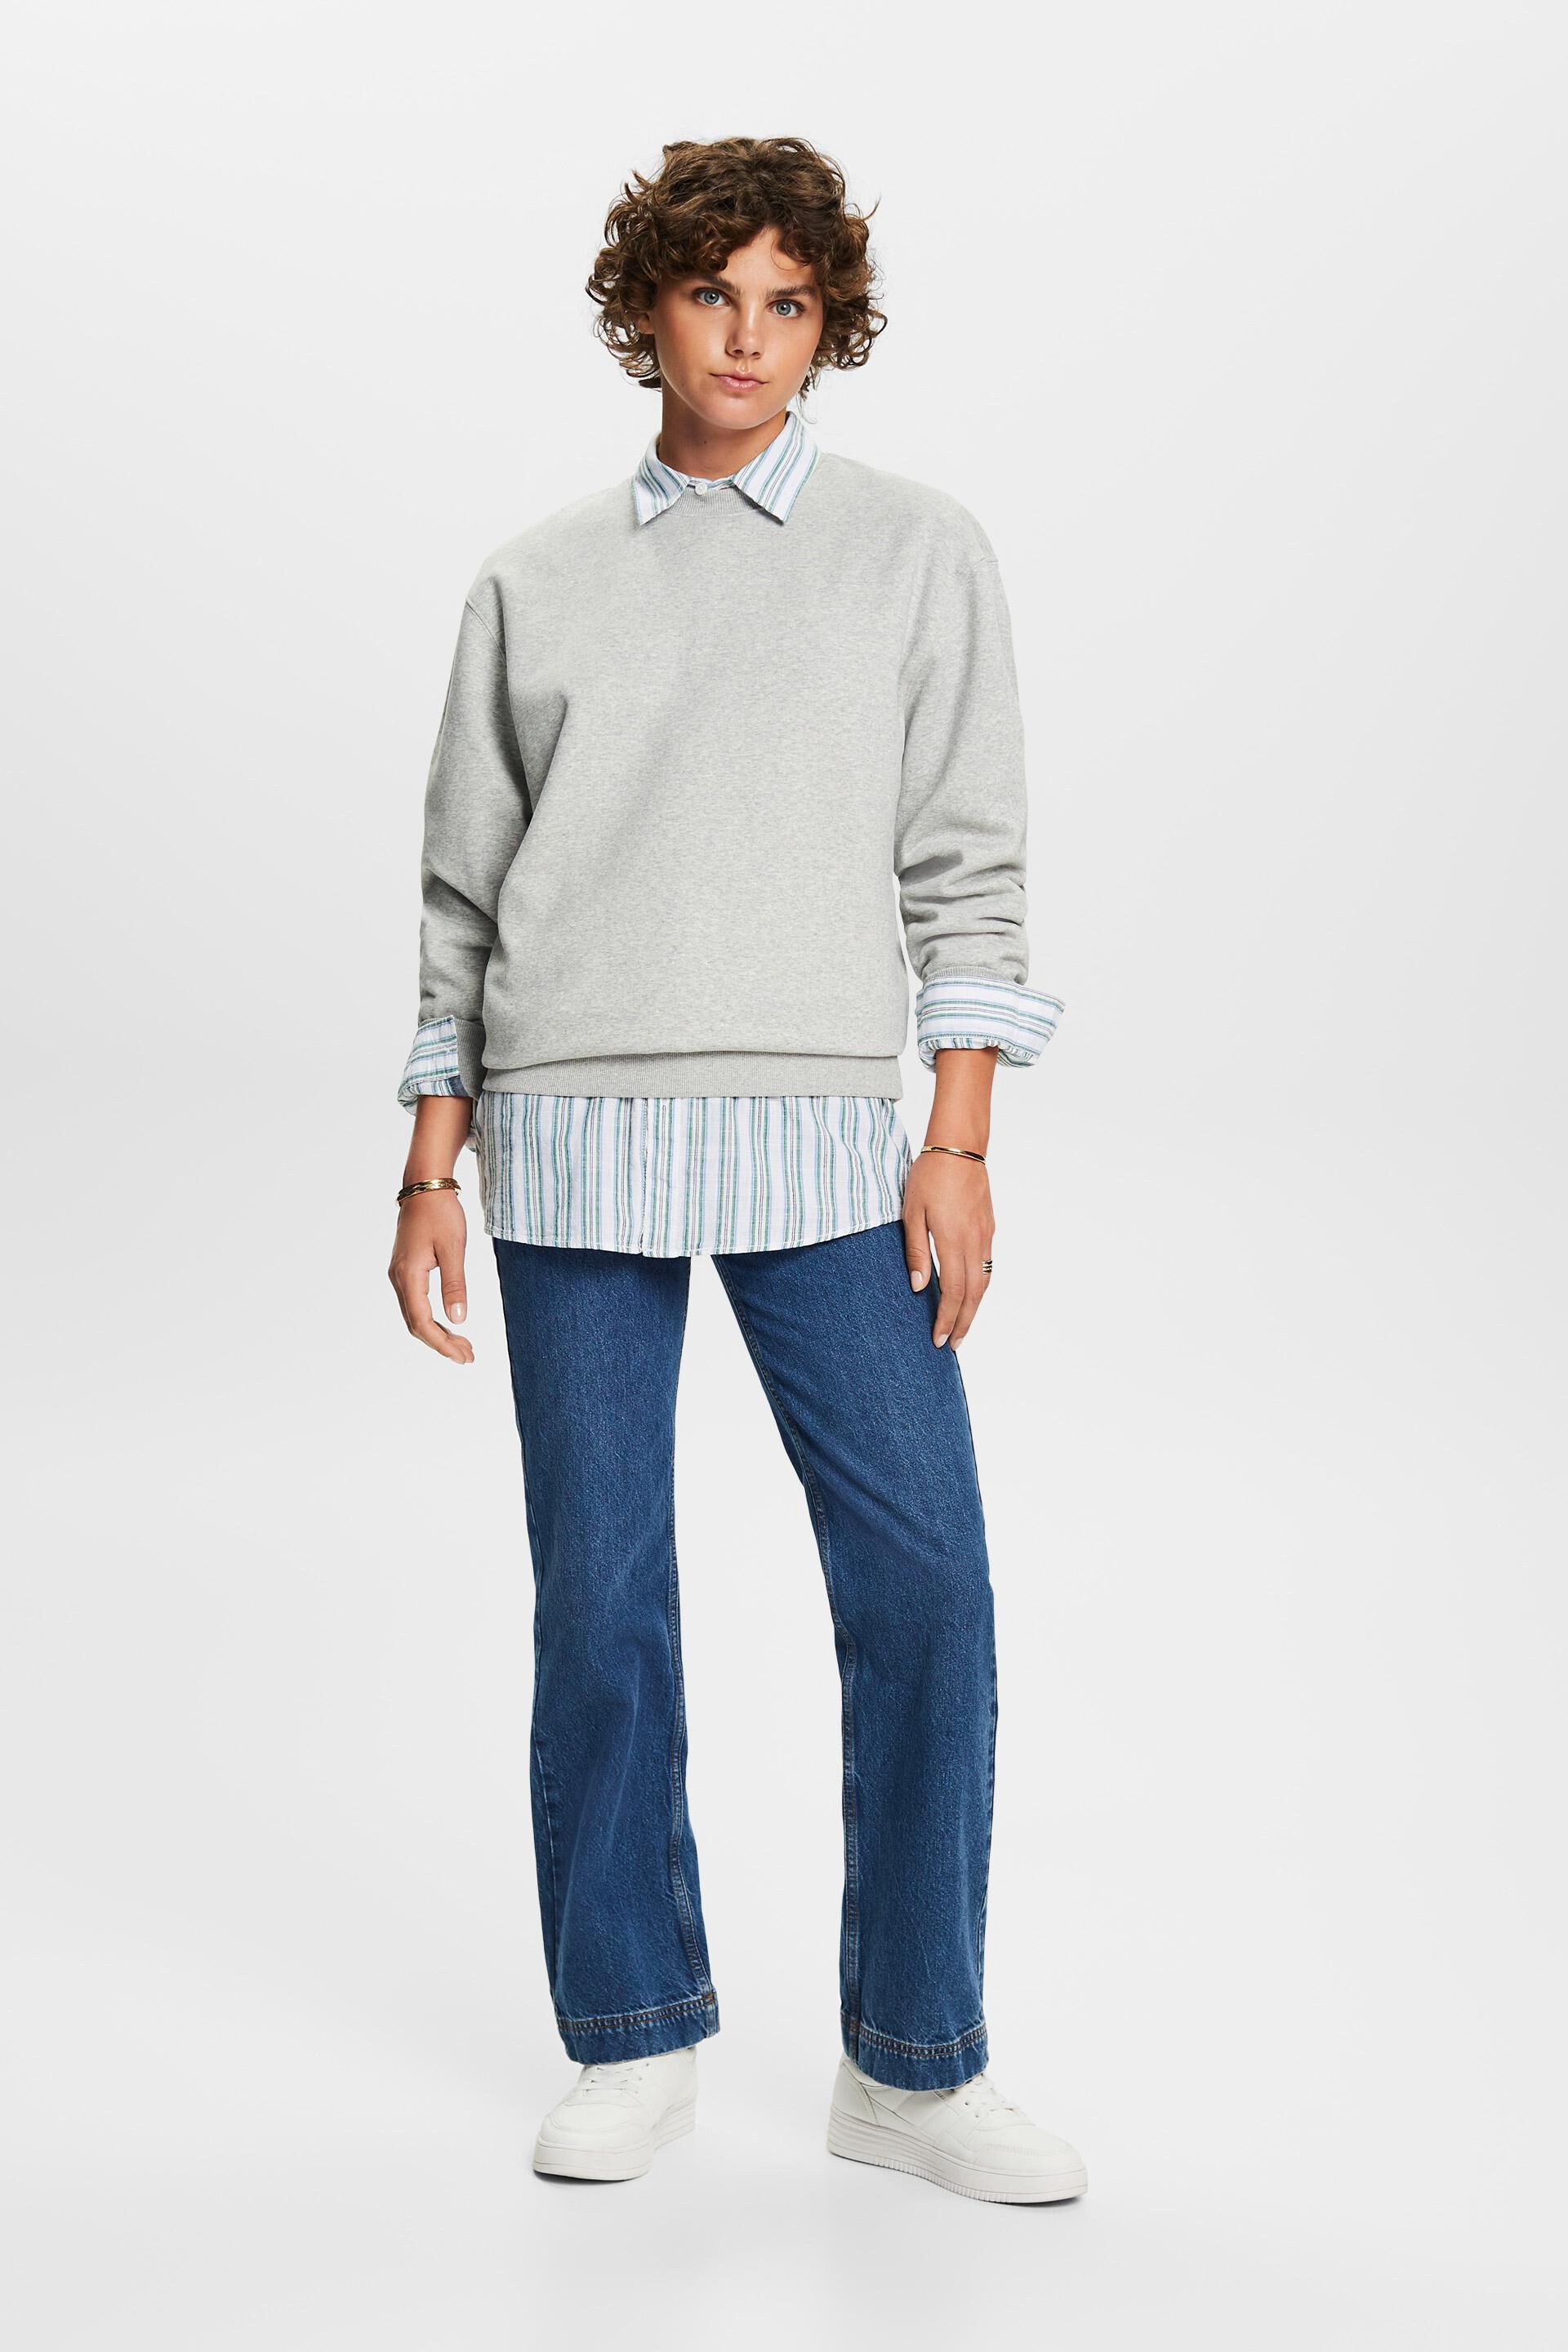 Esprit Damen Pullover-Sweatshirt aus Baumwollmischung